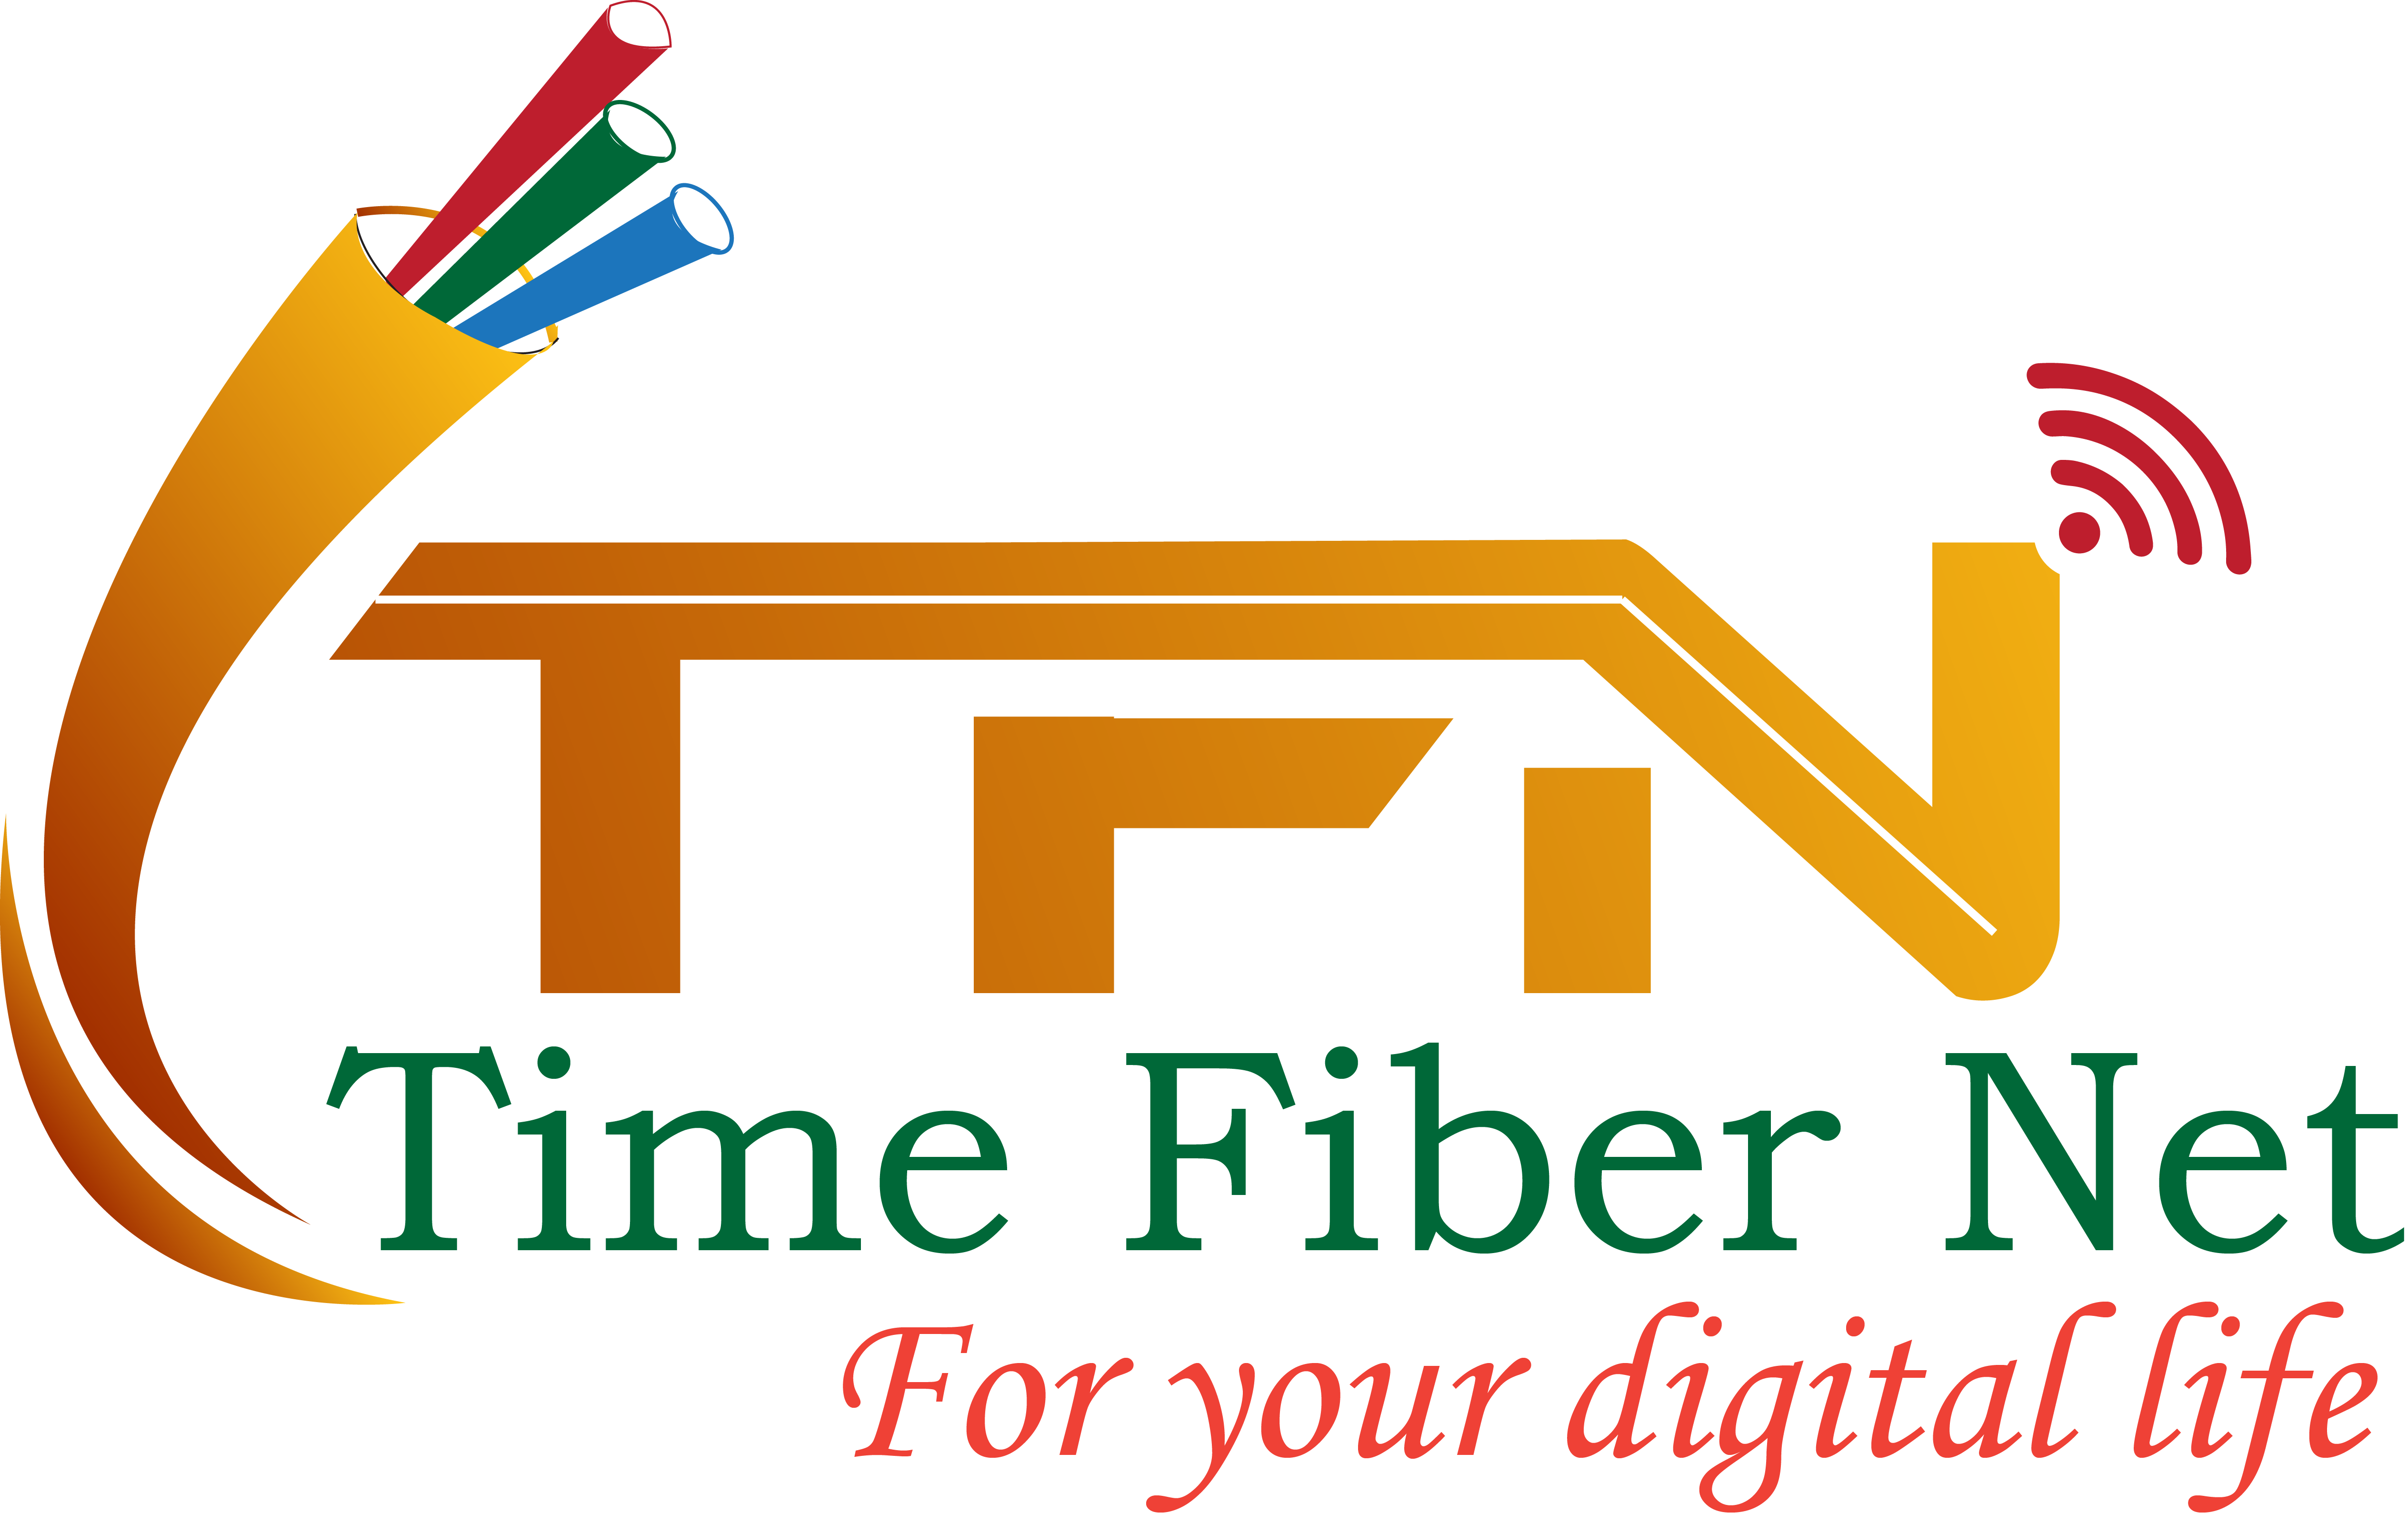  Time Fiber Net-logo